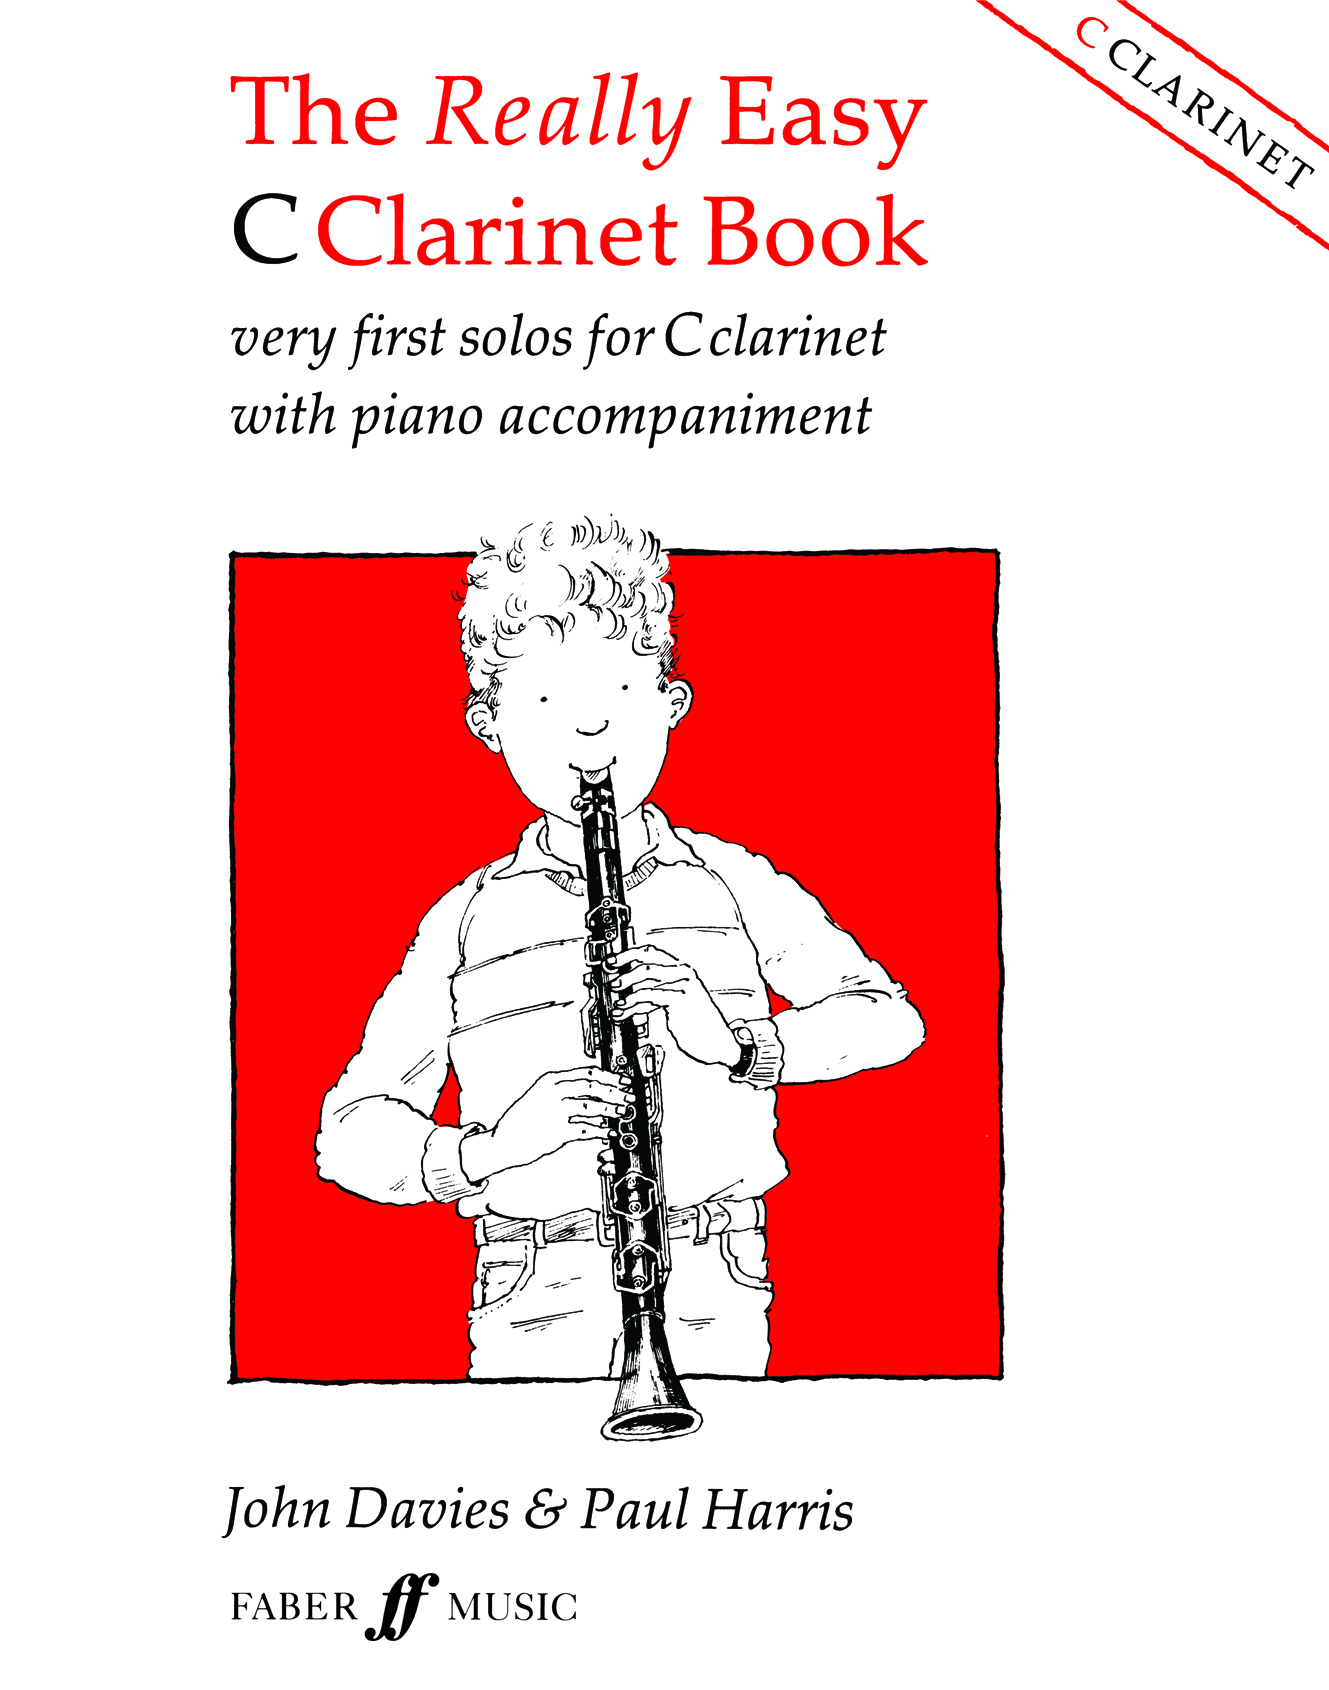 The Really Easy C Clarinet Book (DAVIES JOHN)